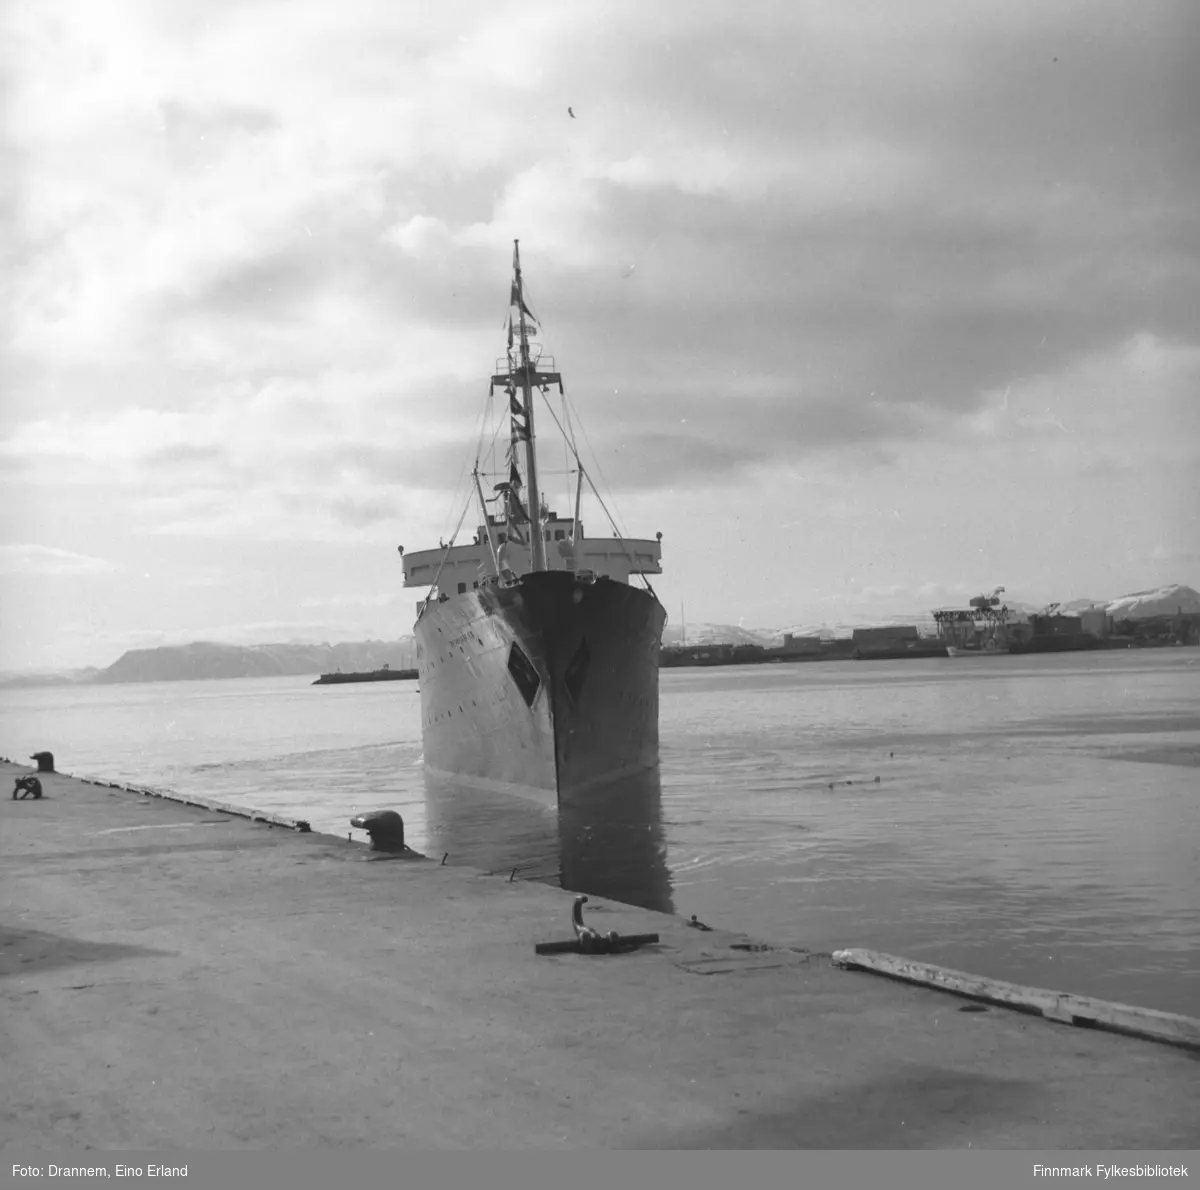 Et skip på vei inn mot Dampskipskaia i Hammerfest. Skipet ligner på MS Vesteraalens rederilogo på hver side av baugen.  Dette må derfor være M/S Vesterålen. På dette bildet ser man Fuglenesodden i bakgrunnen.